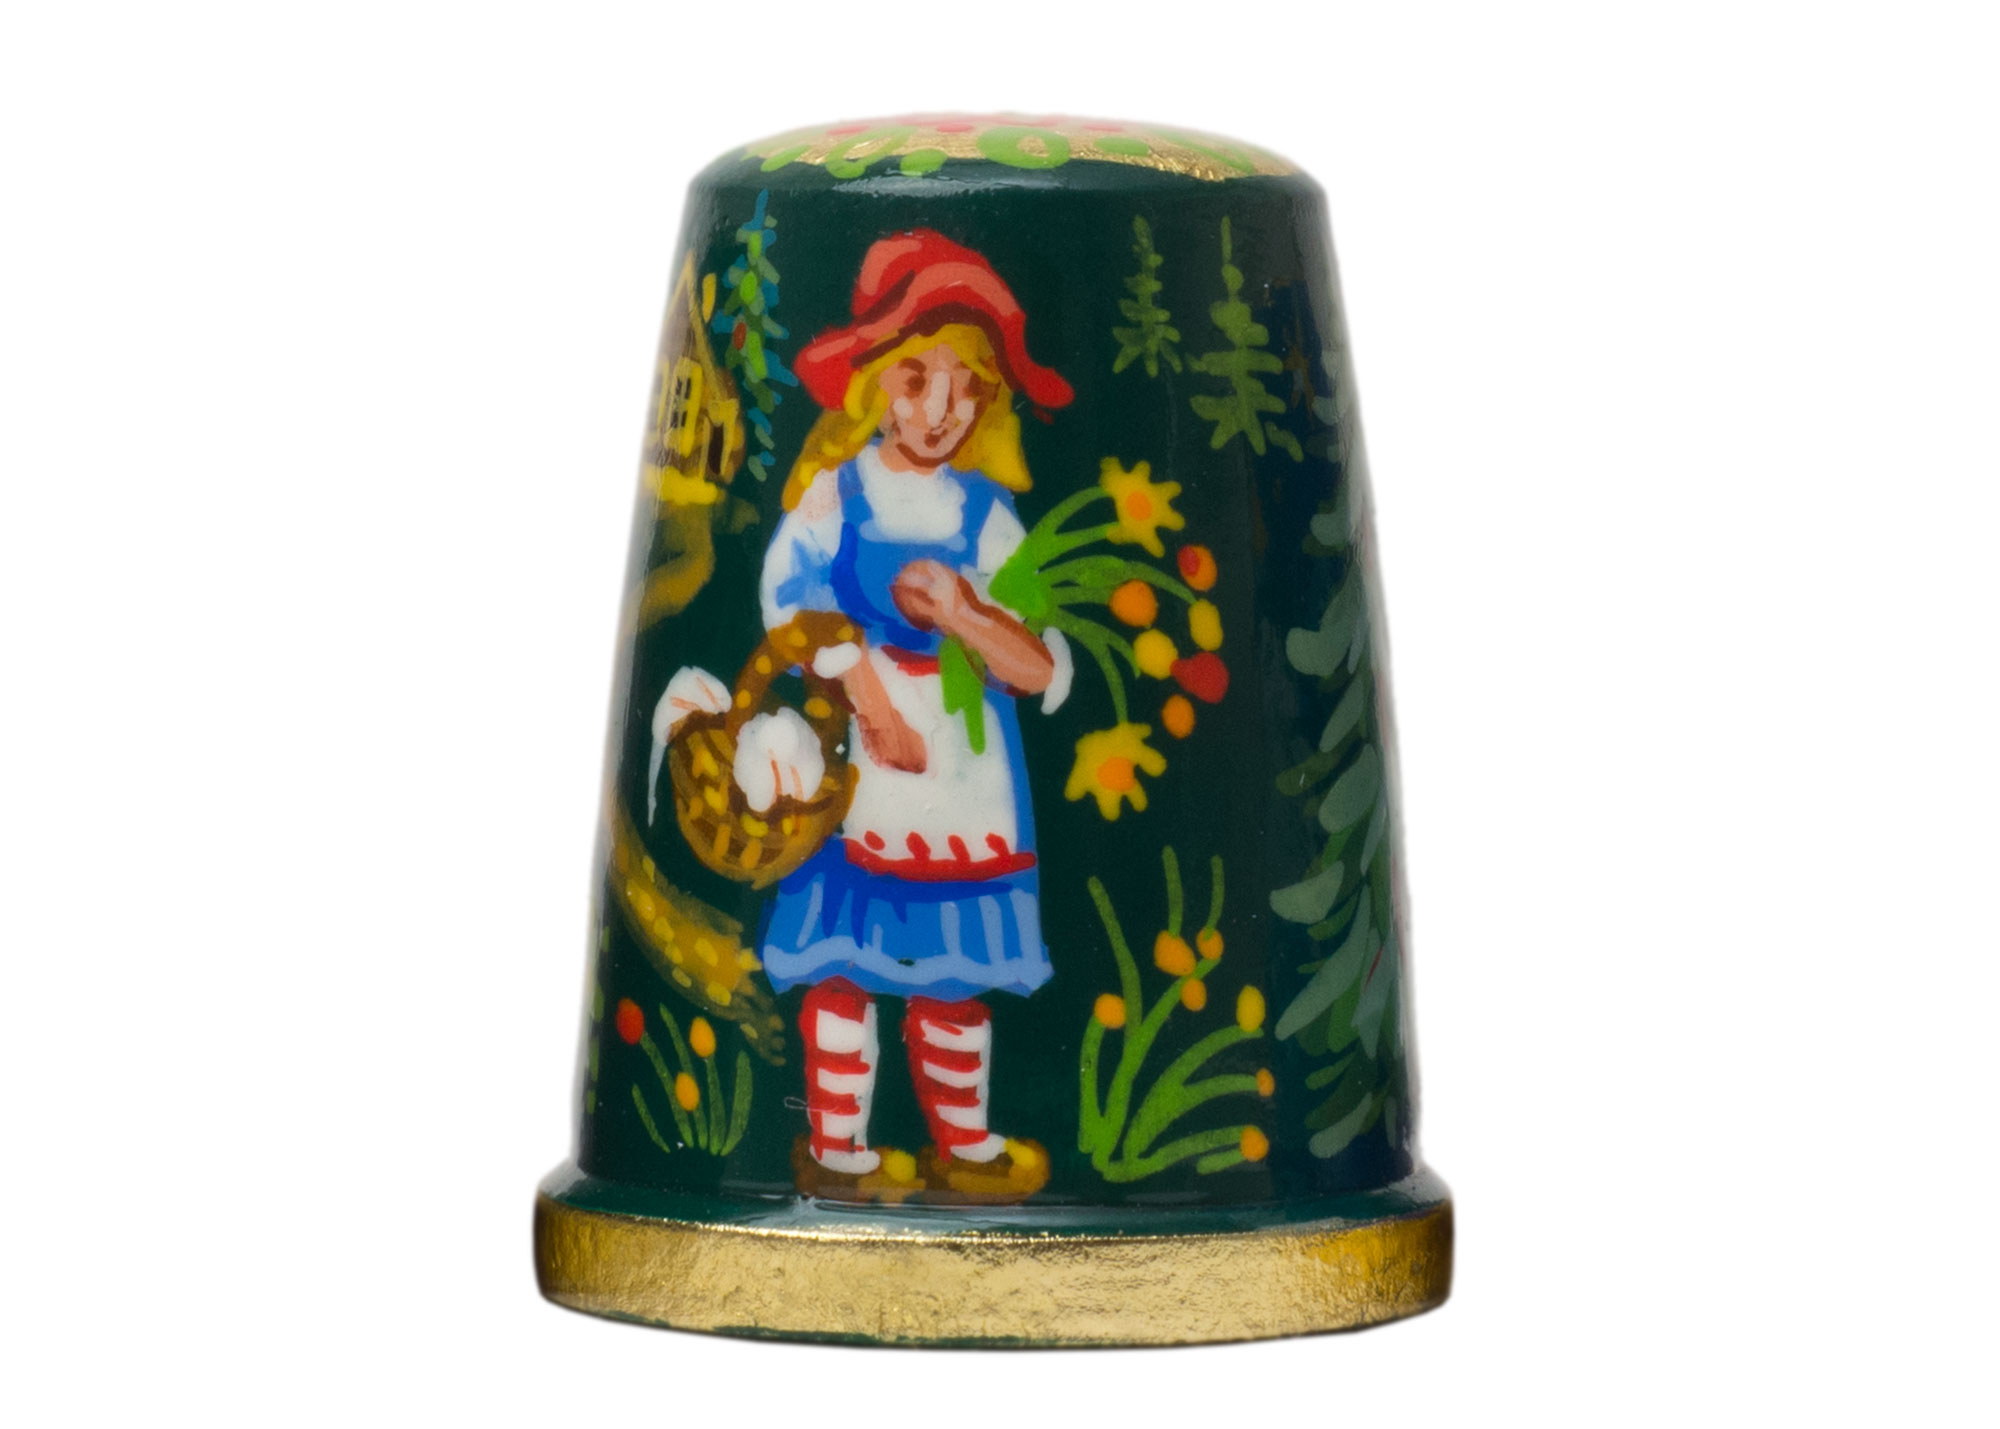 Buy Деревянный наперсток "Красная шапочка" 2,5 см at GoldenCockerel.com